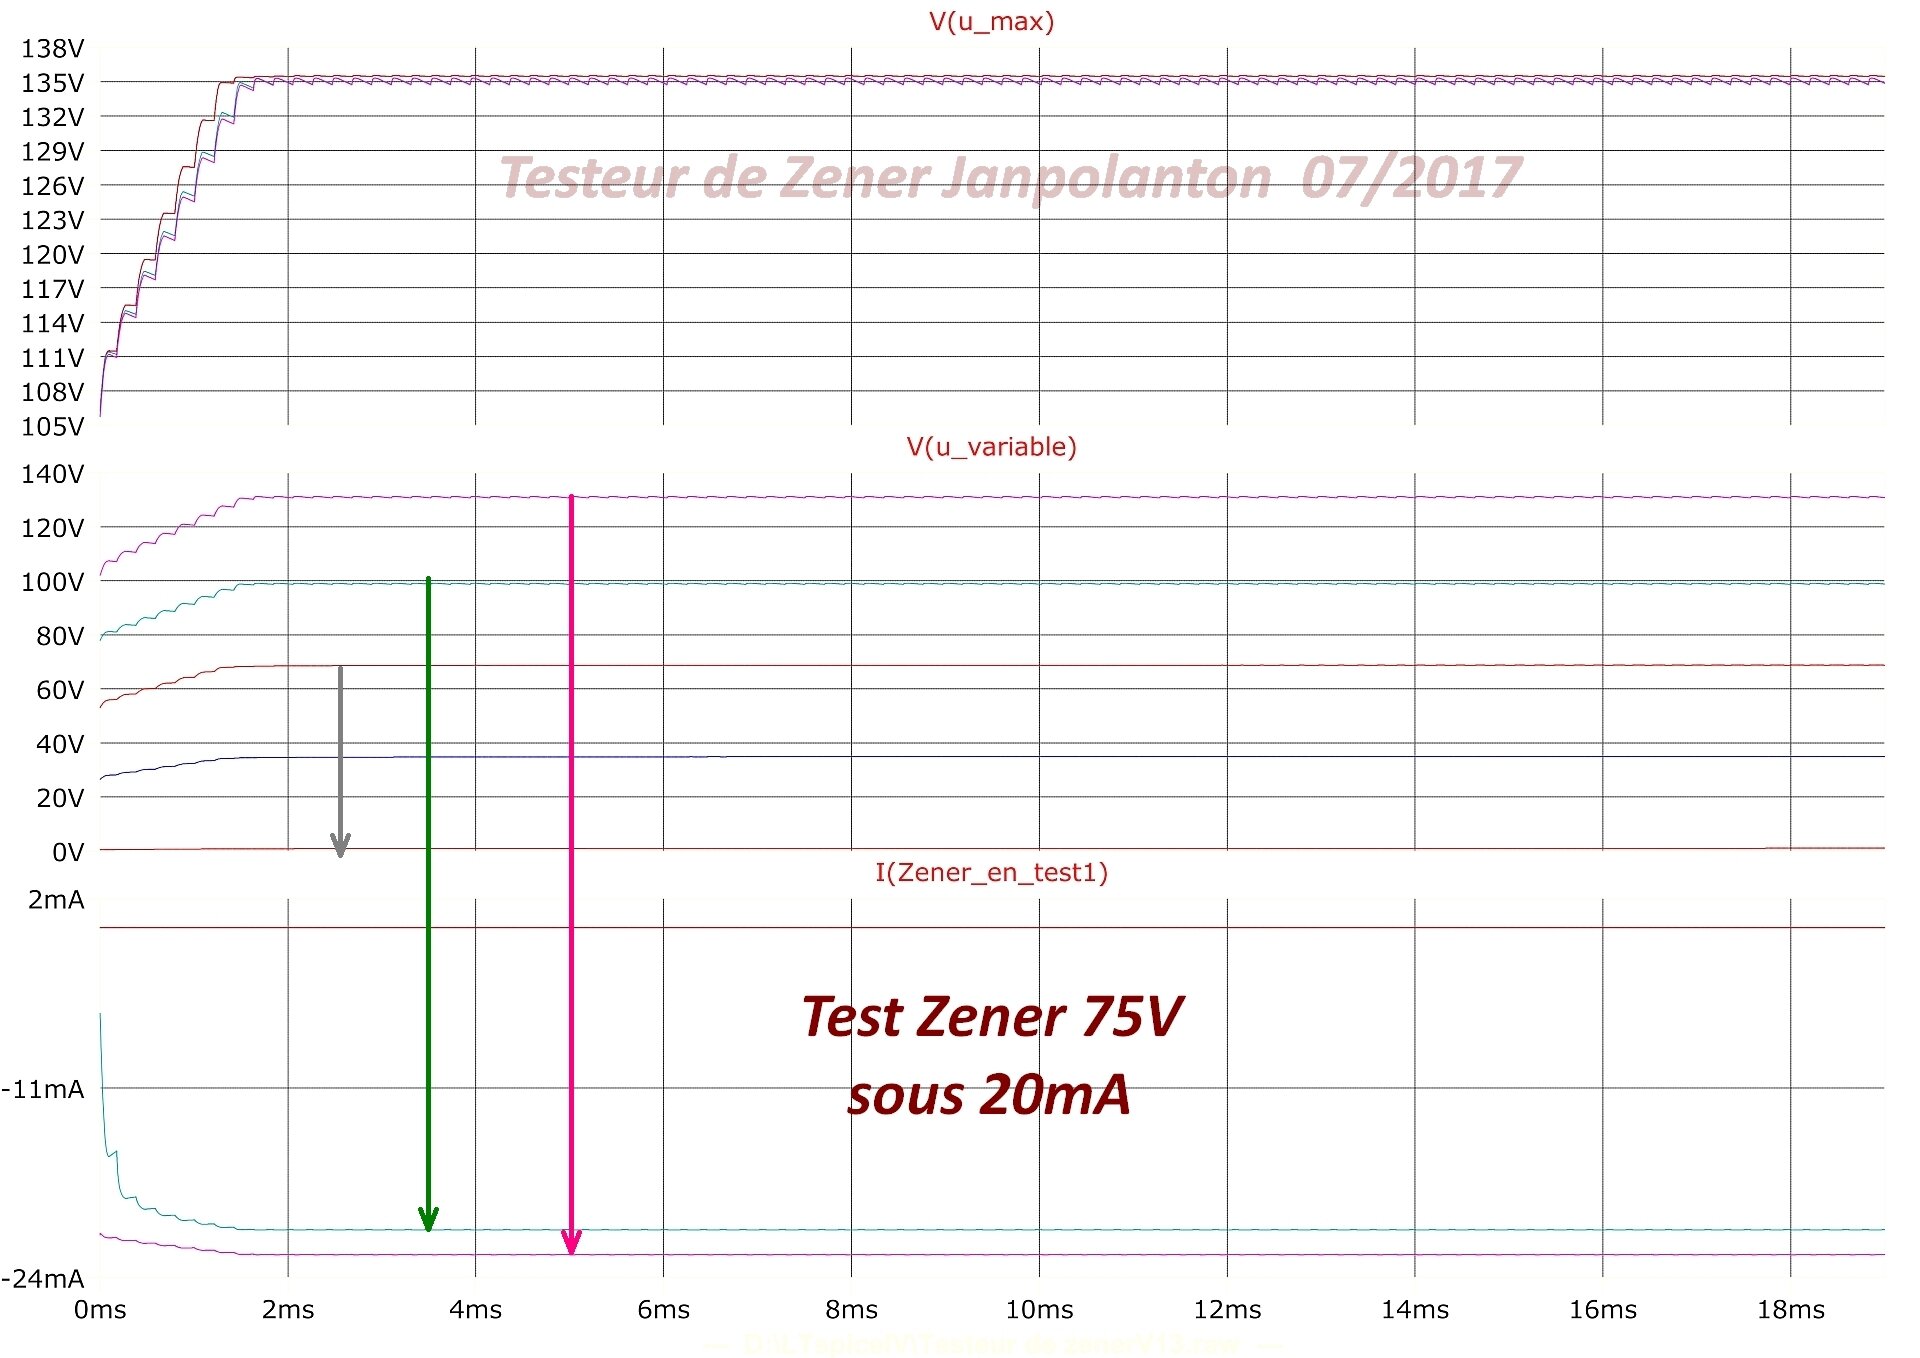 courbes test zener 75V sous 20mA.jpg